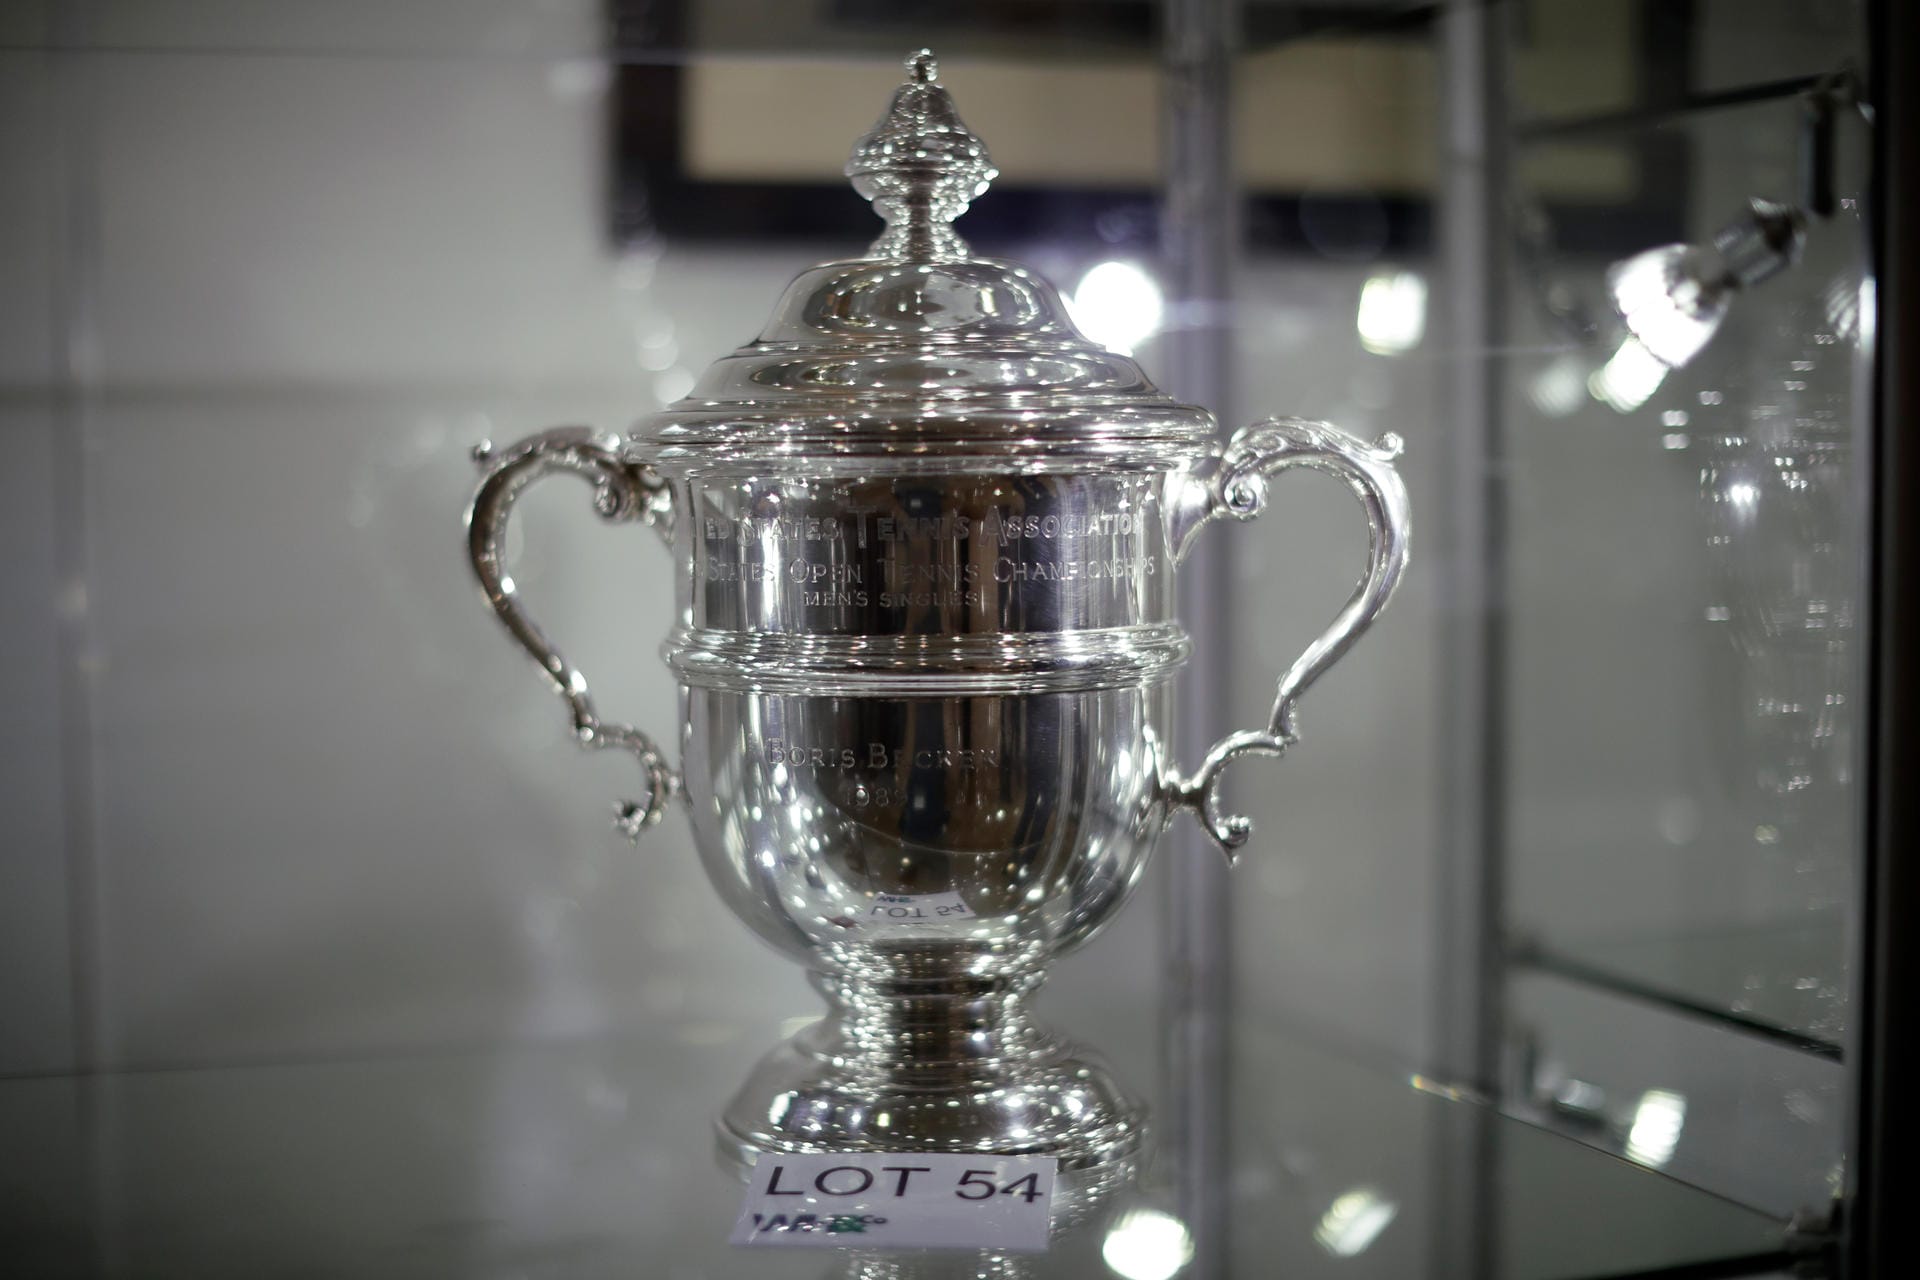 In einer Vitrine der Knapp-Galerie ist eine Replika der US-Open Trophäe des früheren deutschen Tennis-Stars Boris Becker zu sehen.